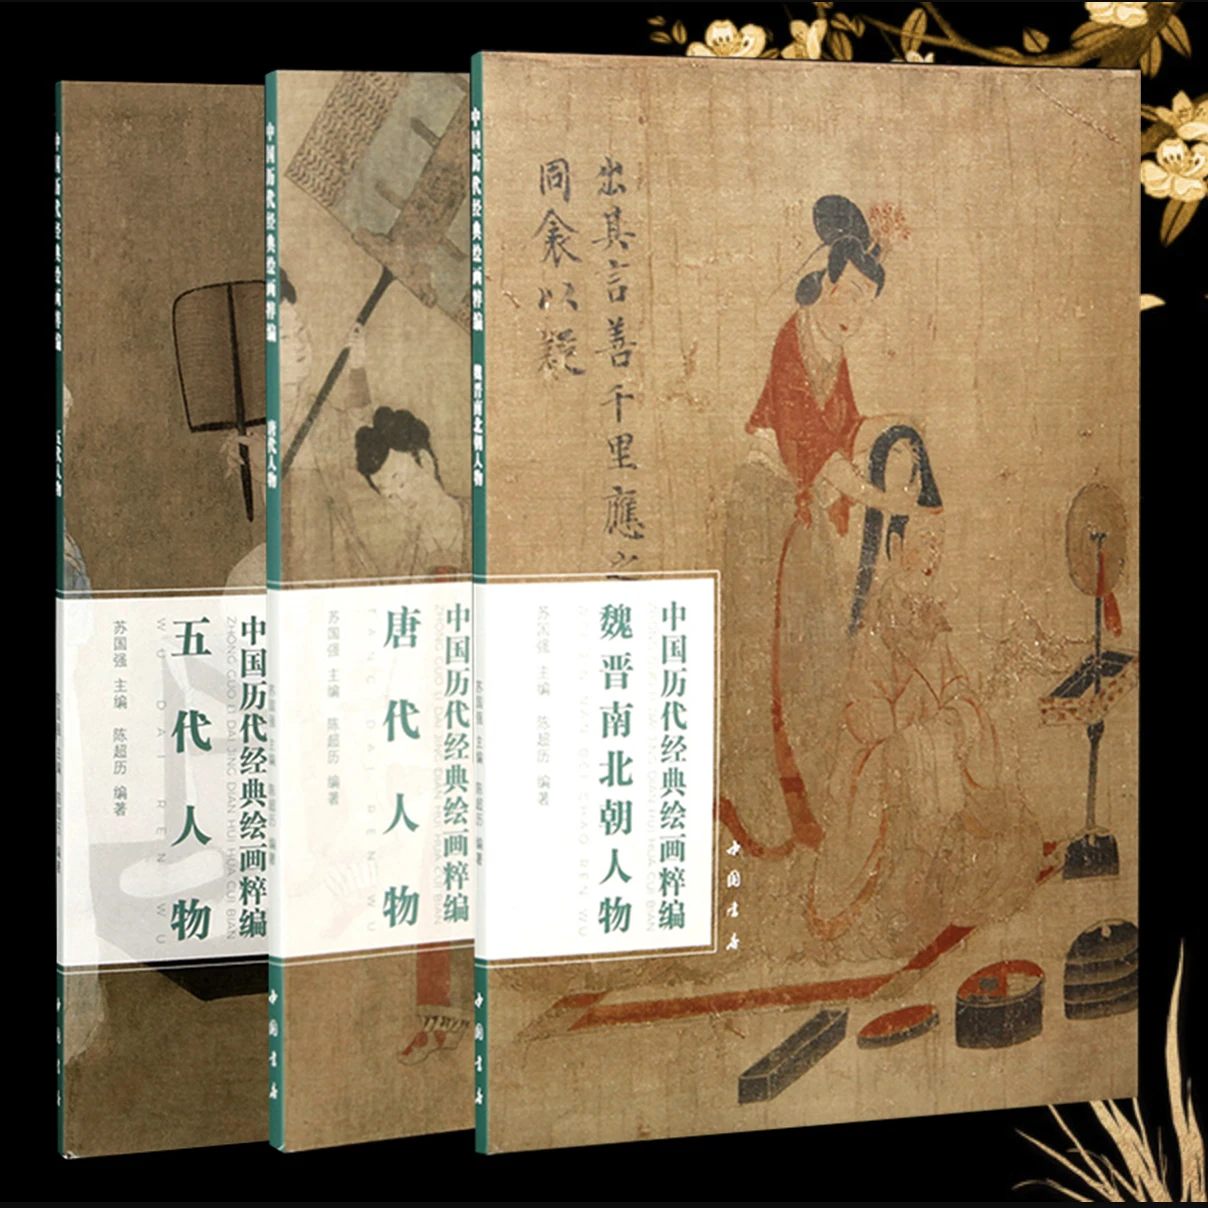 figurines-de-wei-au-chao-du-nord-tang-dai-cinq-dynasties-collection-de-livres-d'art-classiques-de-la-serie-des-douanes-chinoises